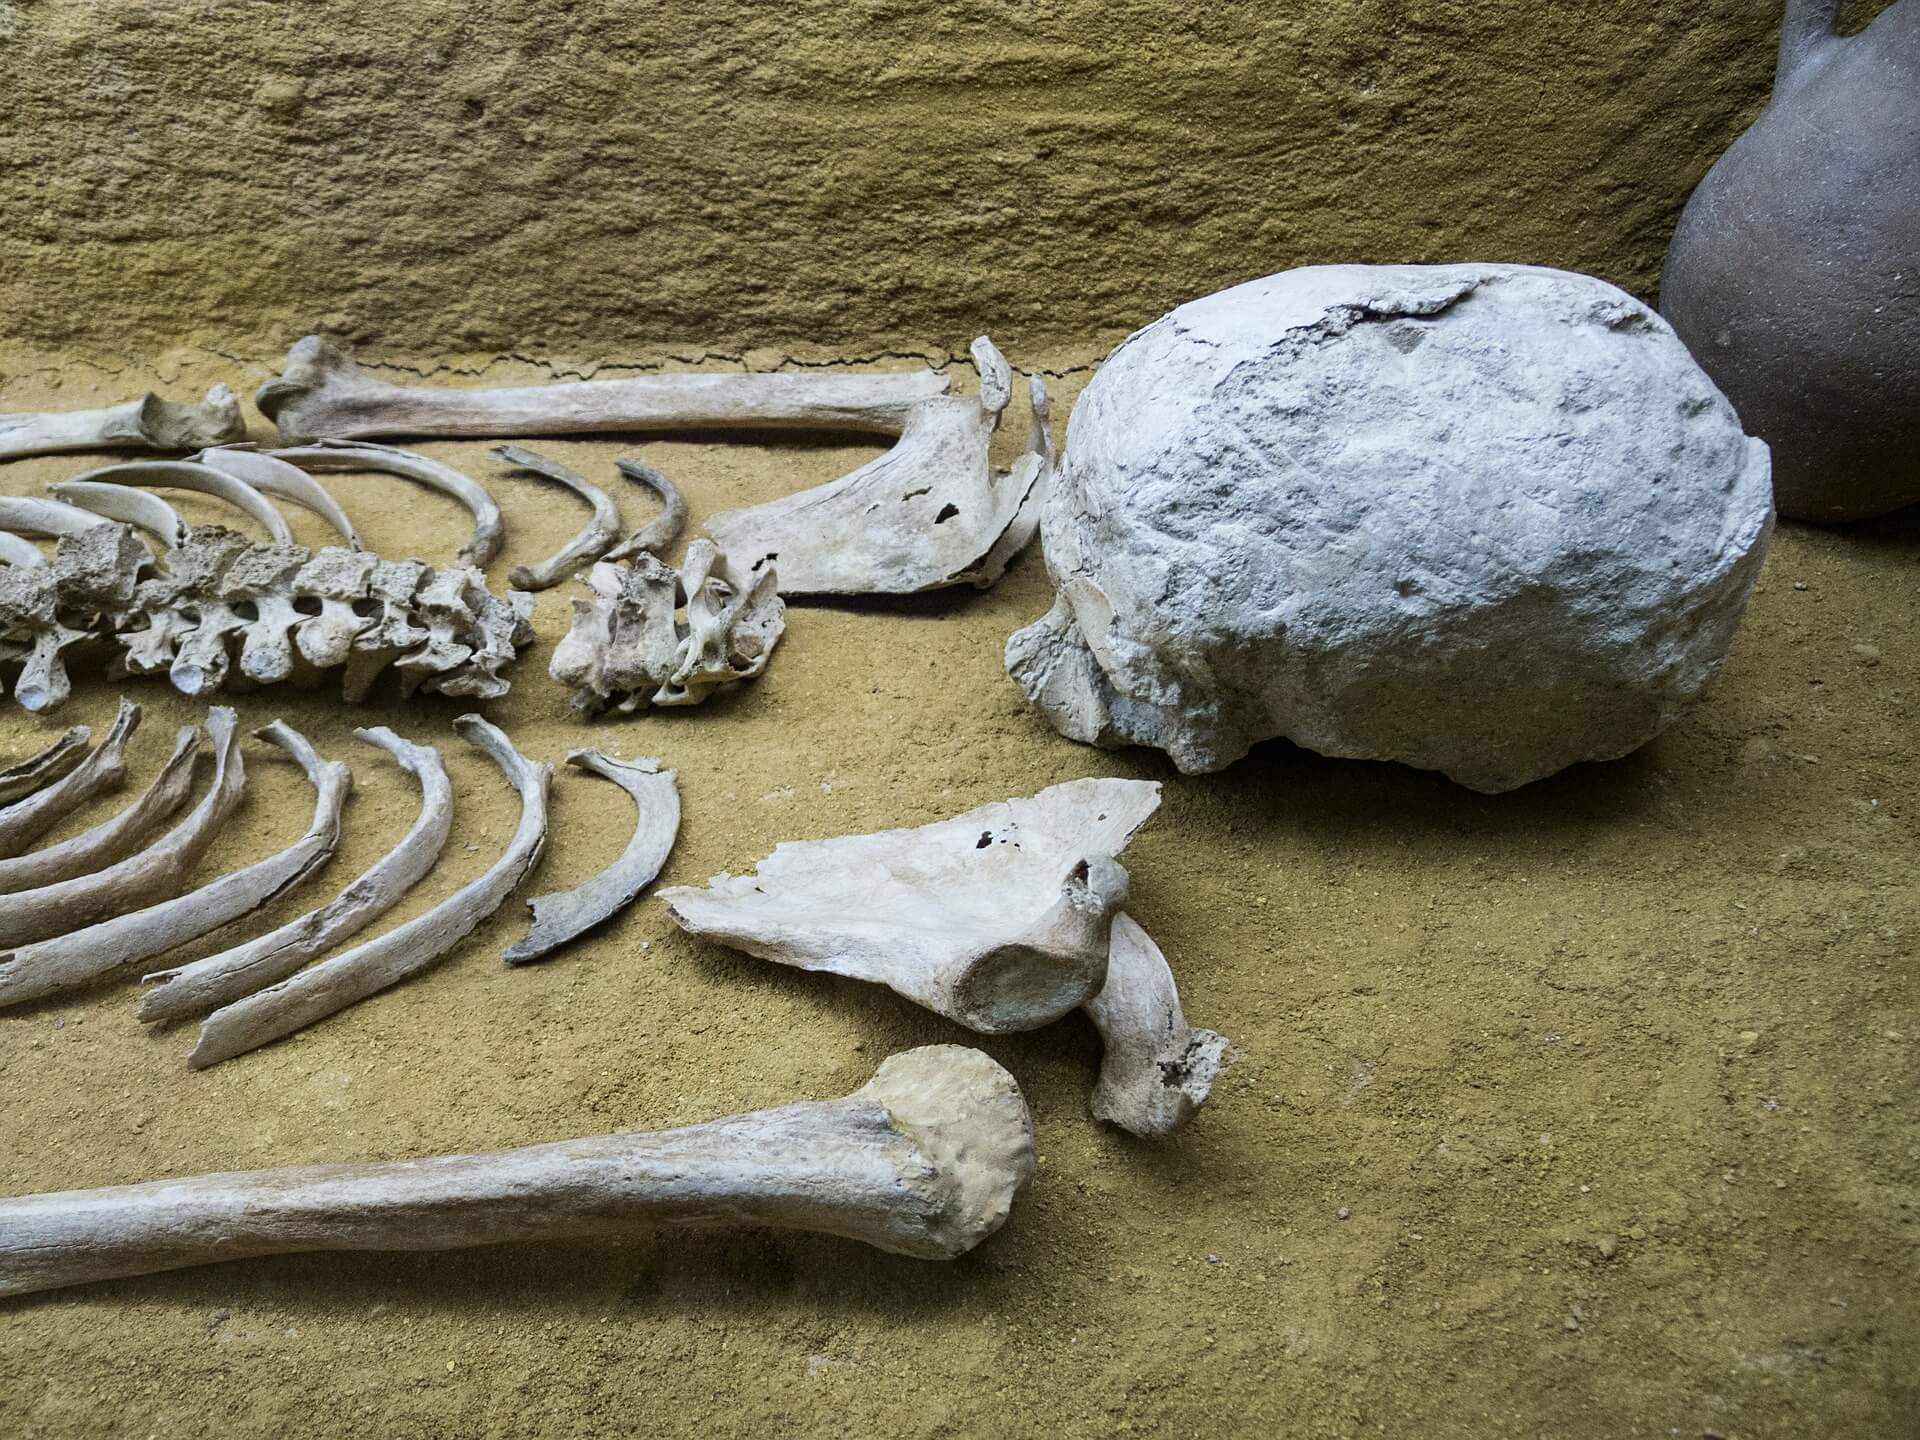 Skeleton bones on the floor of a burial site